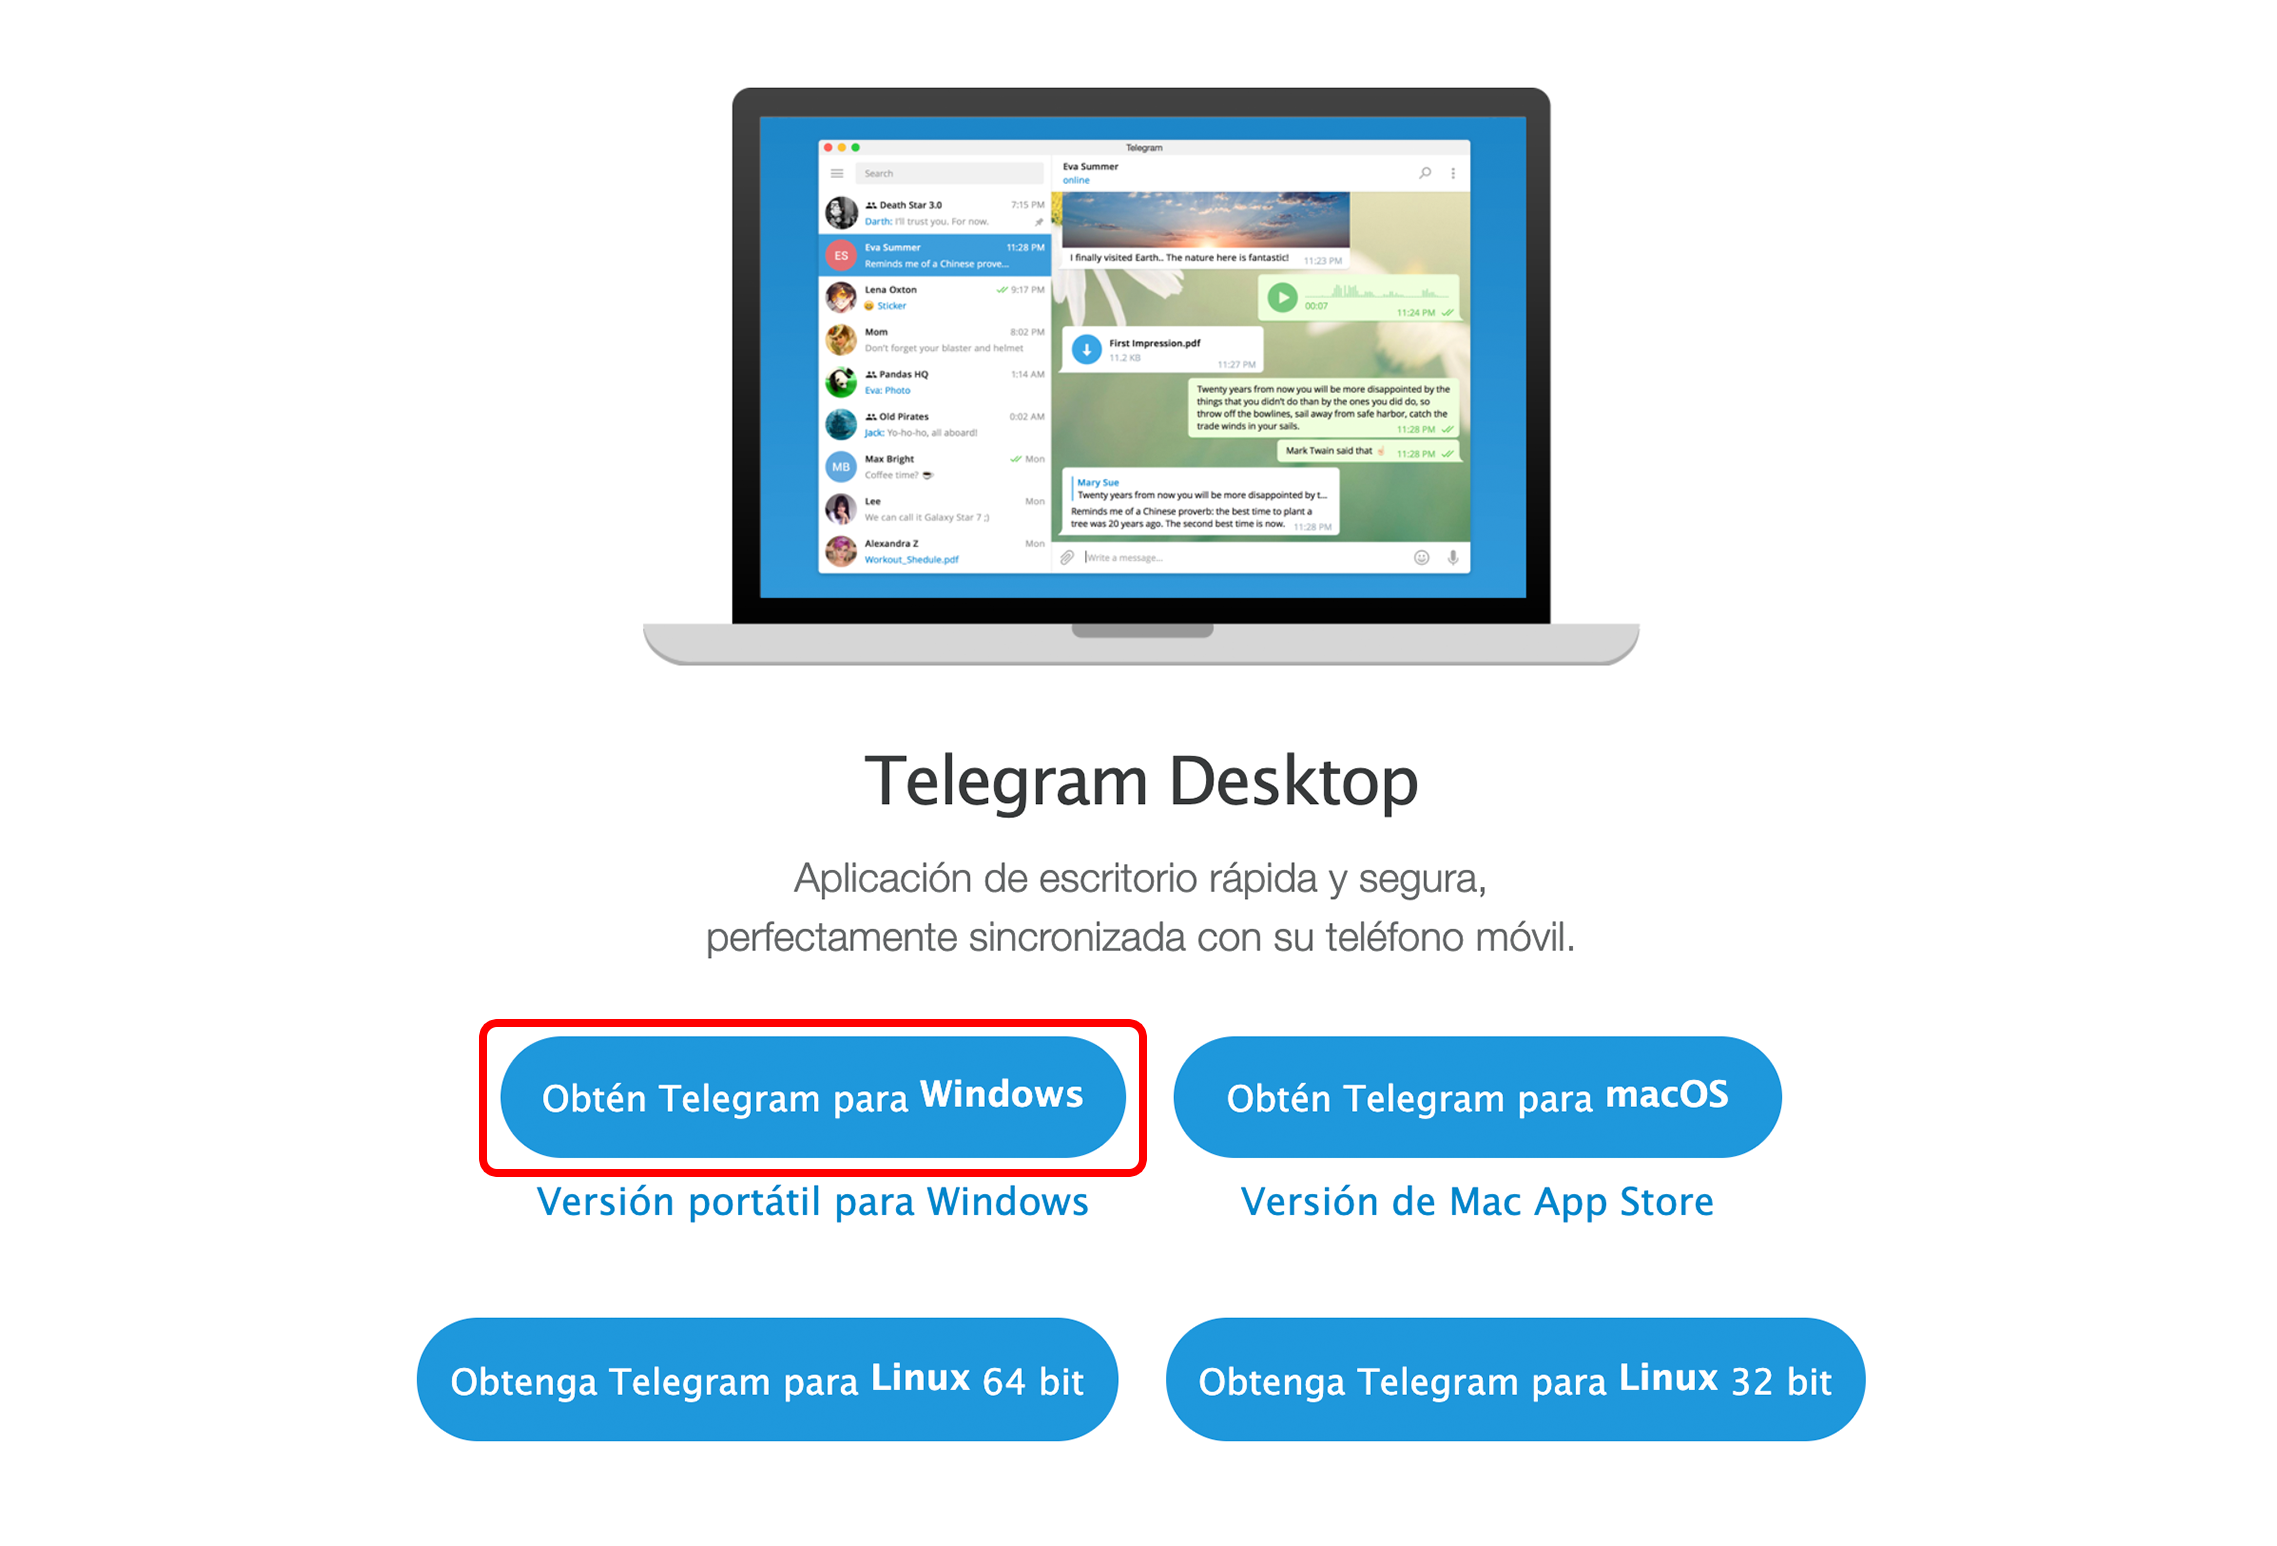 Haz clic en el botón Obtener Telegram para Windows.